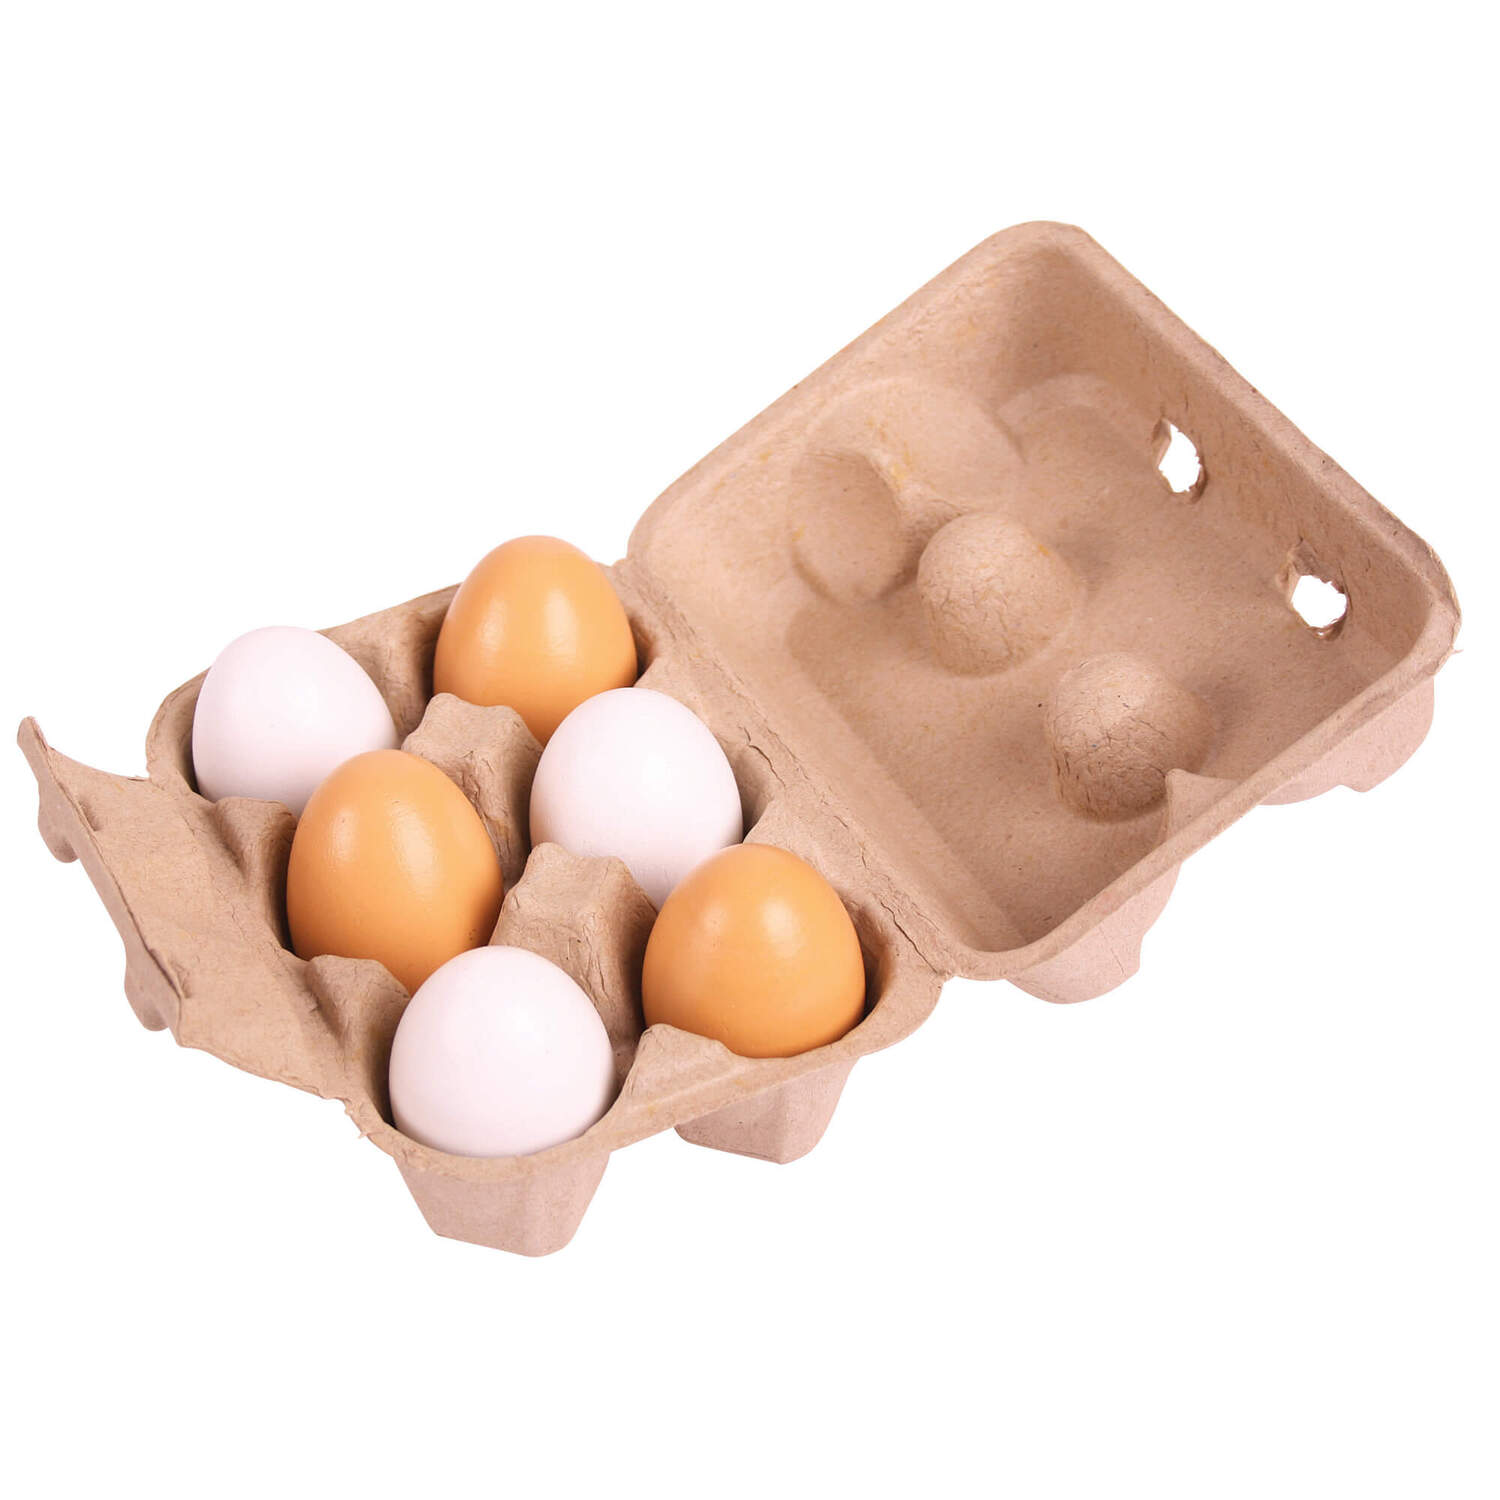 Купить яйцо детям. Упаковка для яиц. Картонные коробки для яиц. Контейнеры для яиц картонные. Упаковка для яиц 6 штук.